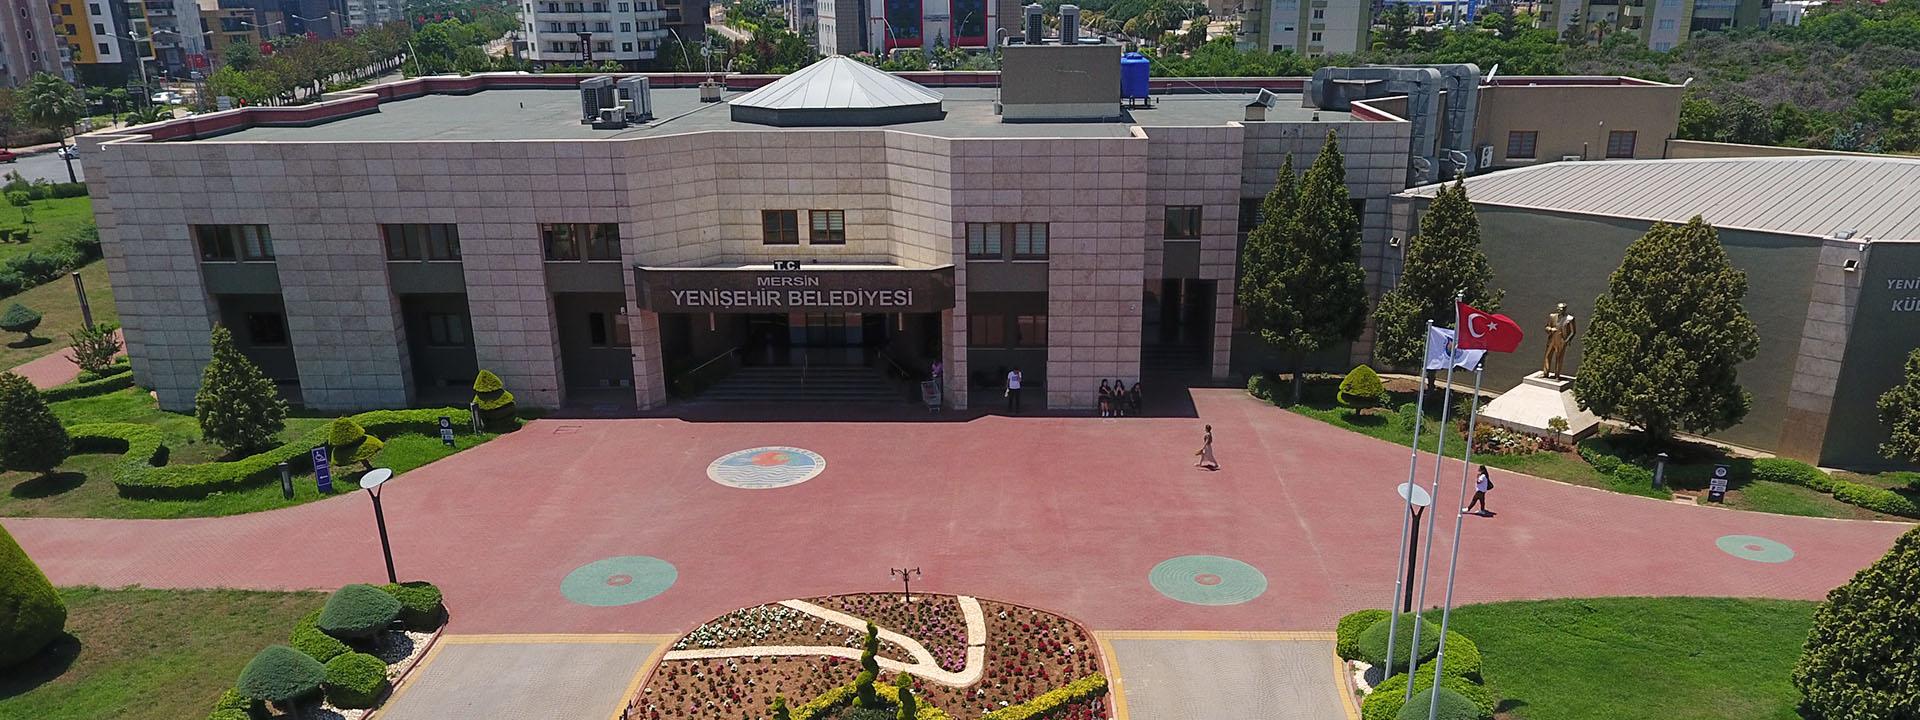 Yenişehir Belediyesi Hizmet Binası